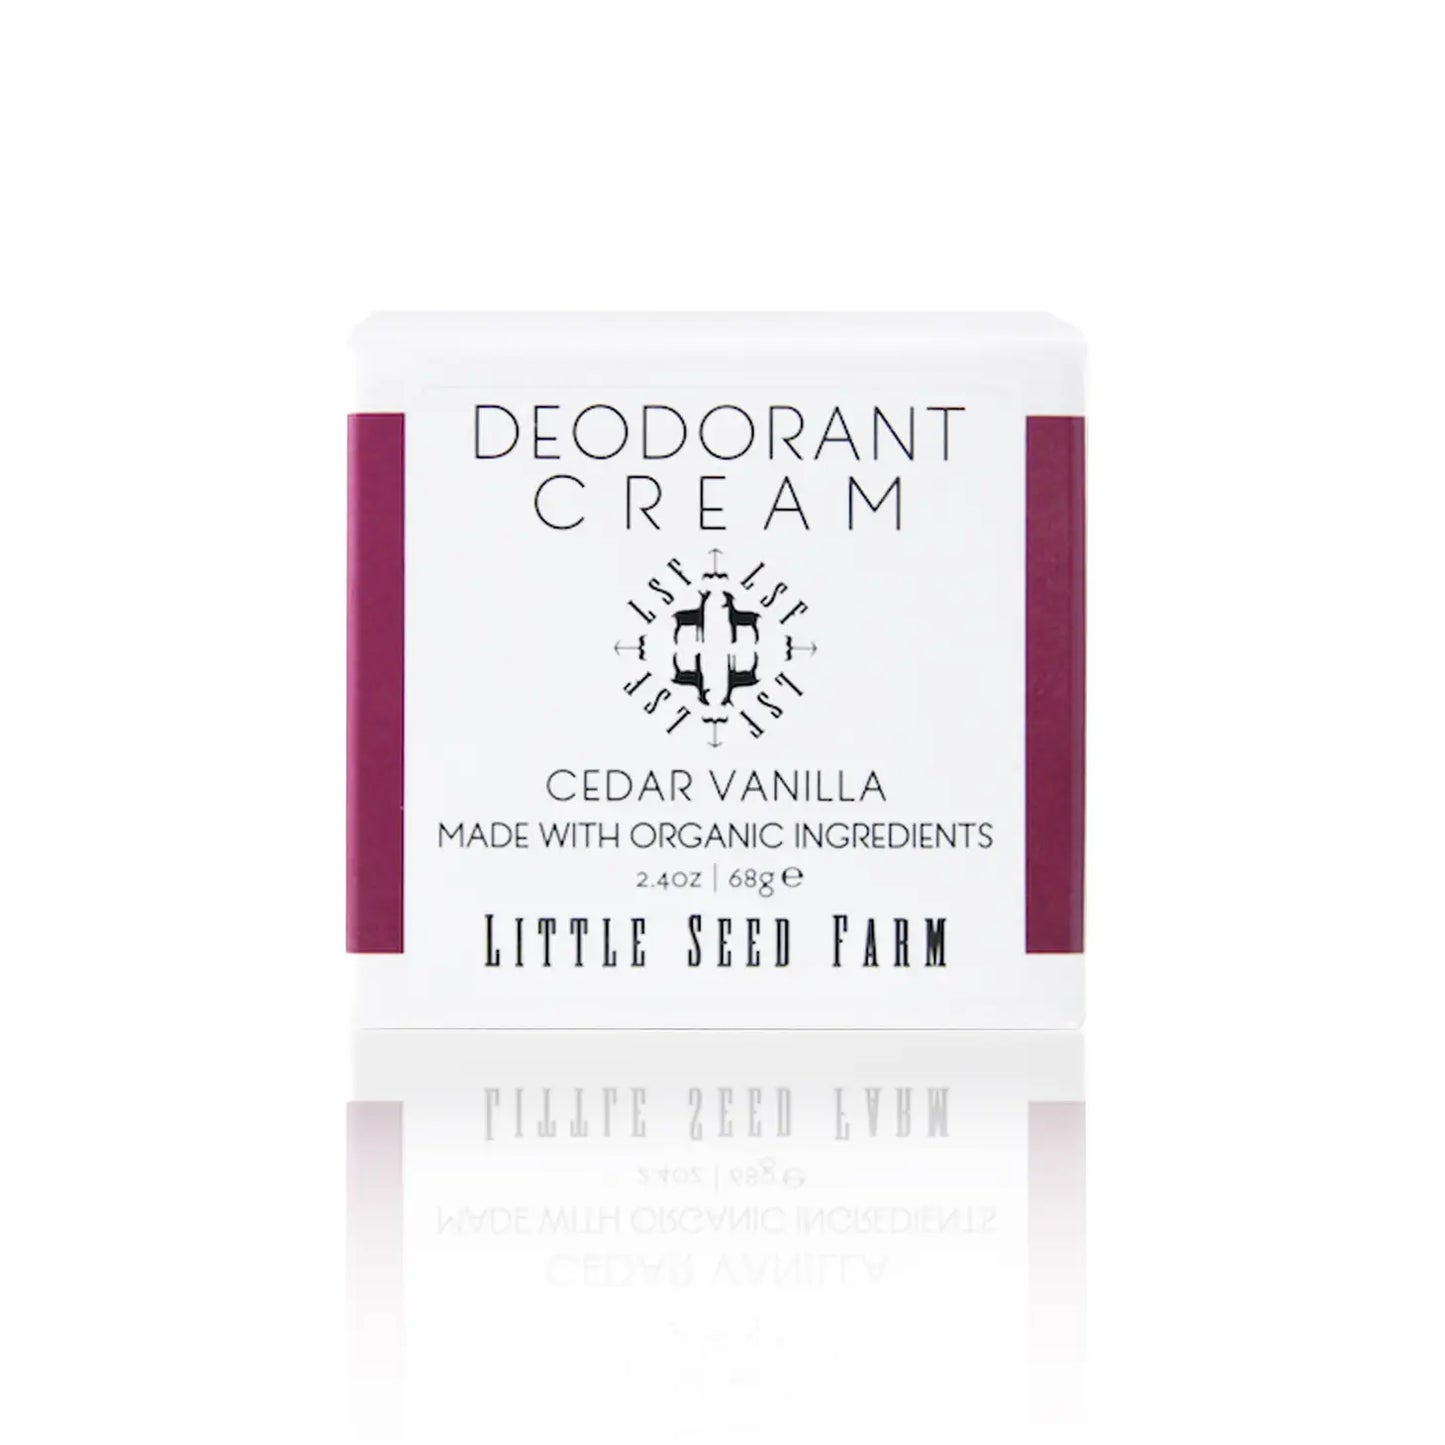 *Deodorant Cream